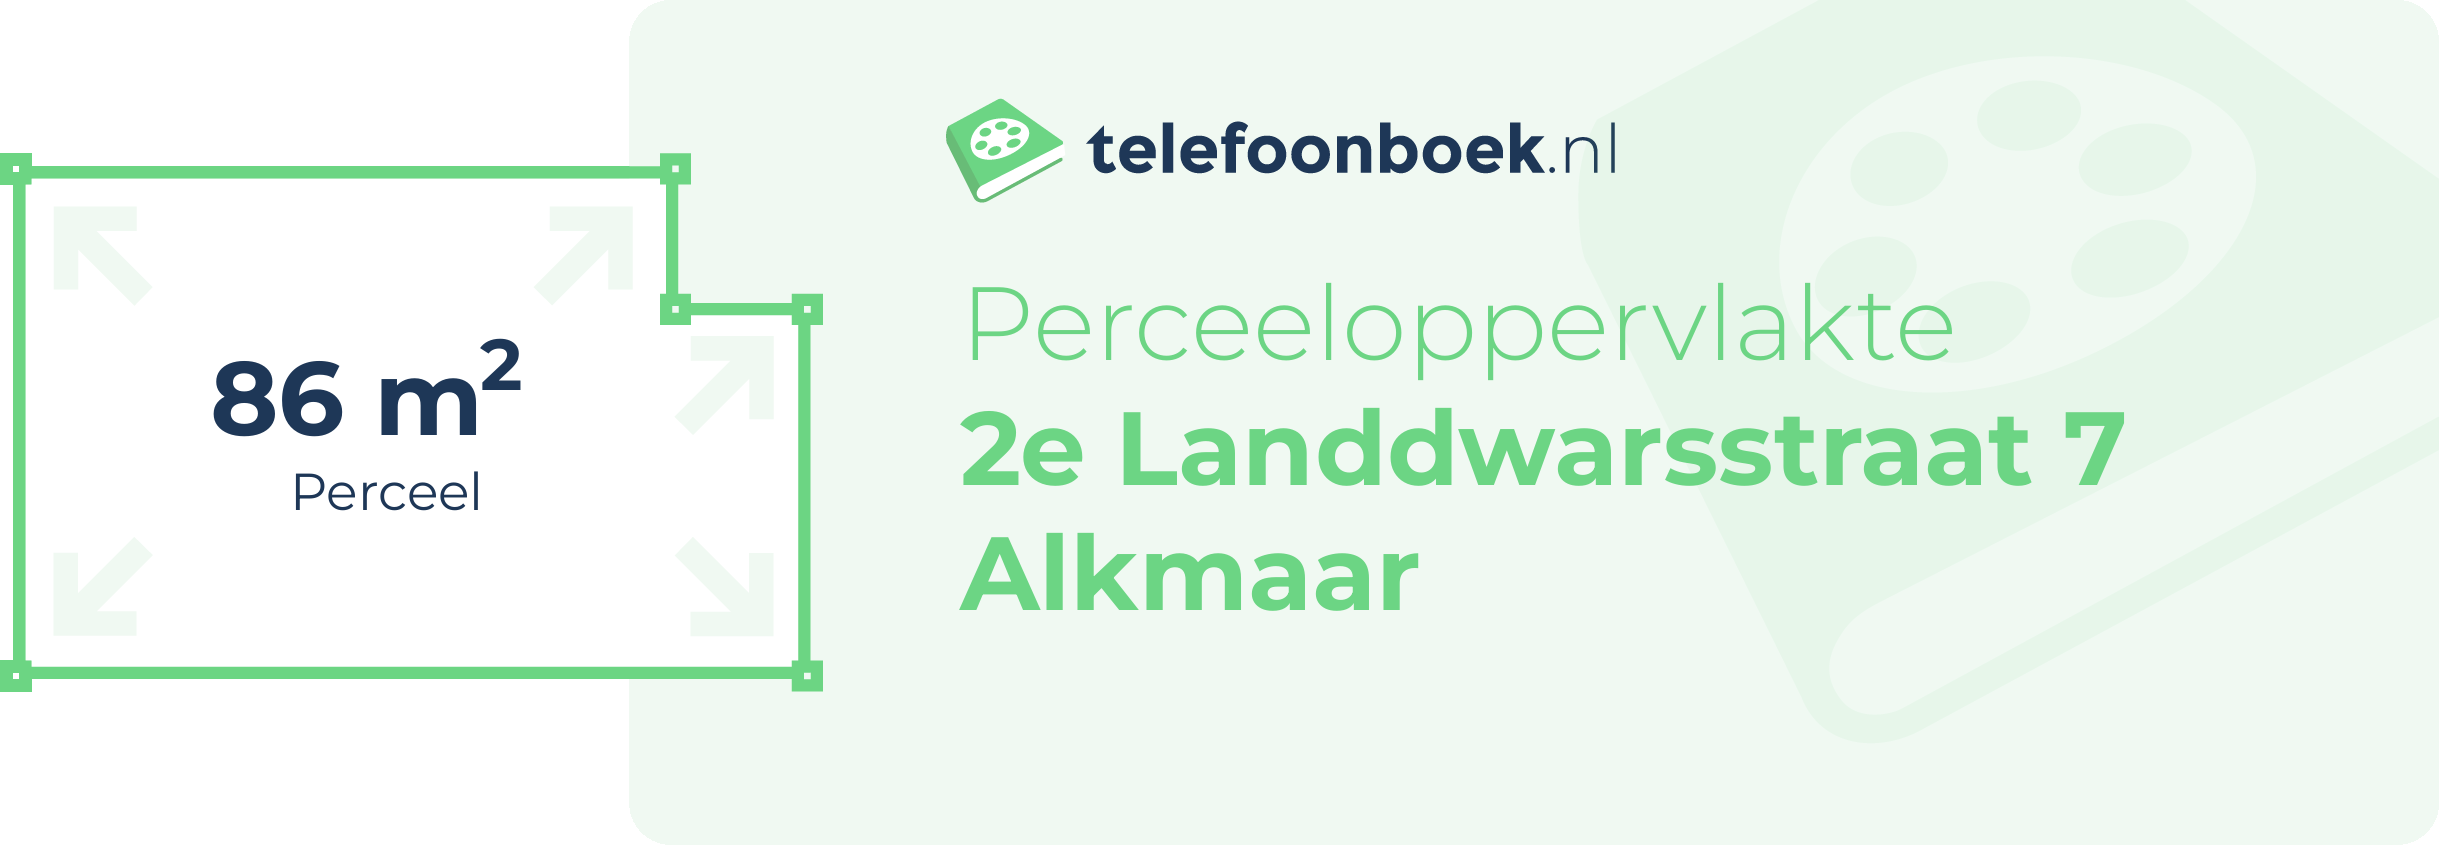 Perceeloppervlakte 2e Landdwarsstraat 7 Alkmaar